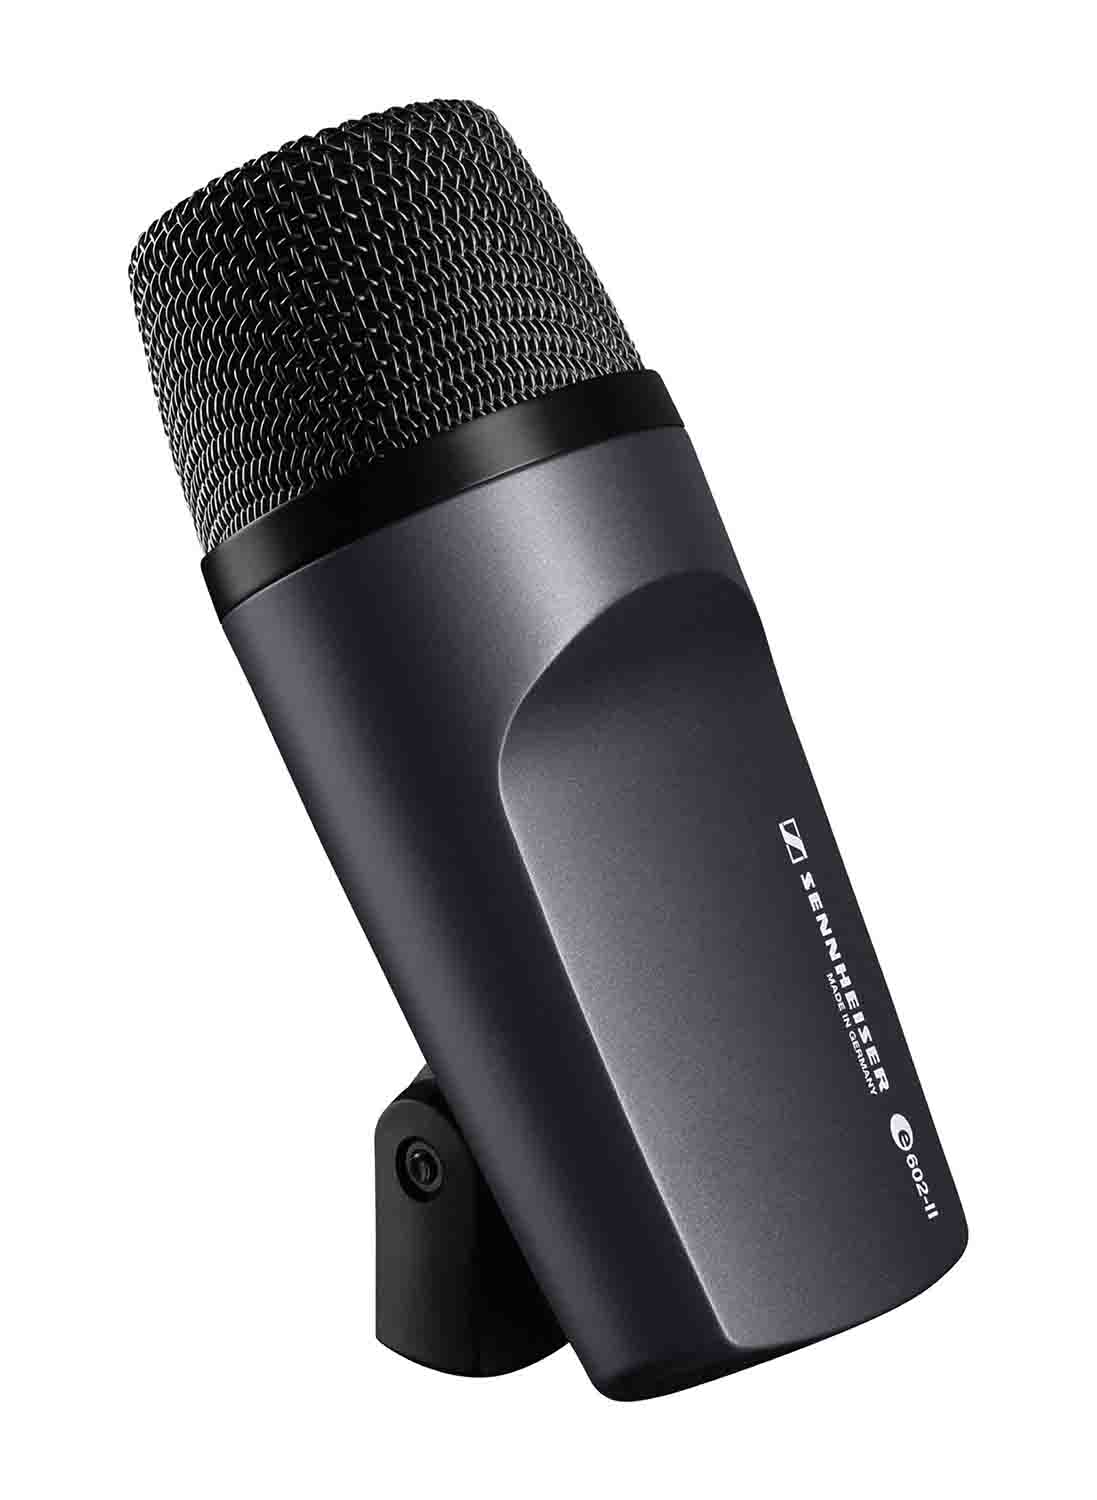 Sennheiser E 602 II Cardioid Dynamic Instrument Microphone - Hollywood DJ